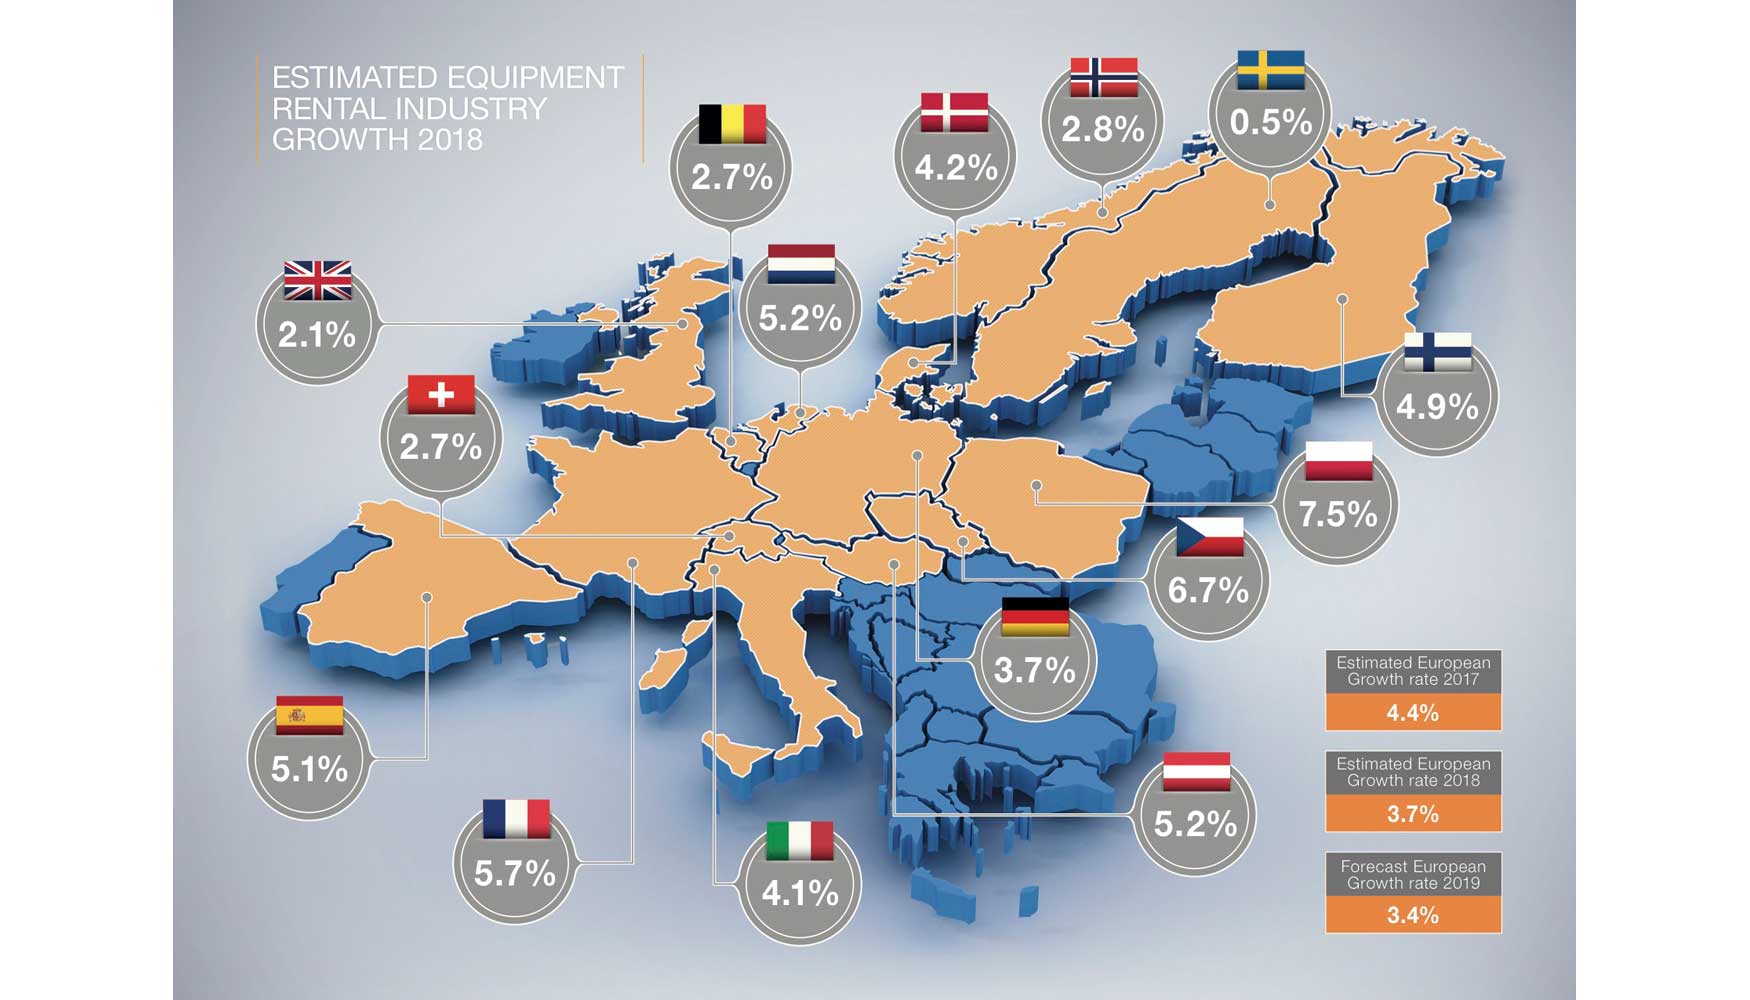 Crecimiento estimado del sector de alquiler de maquinaria en 2018 en los diferentes pases europeos